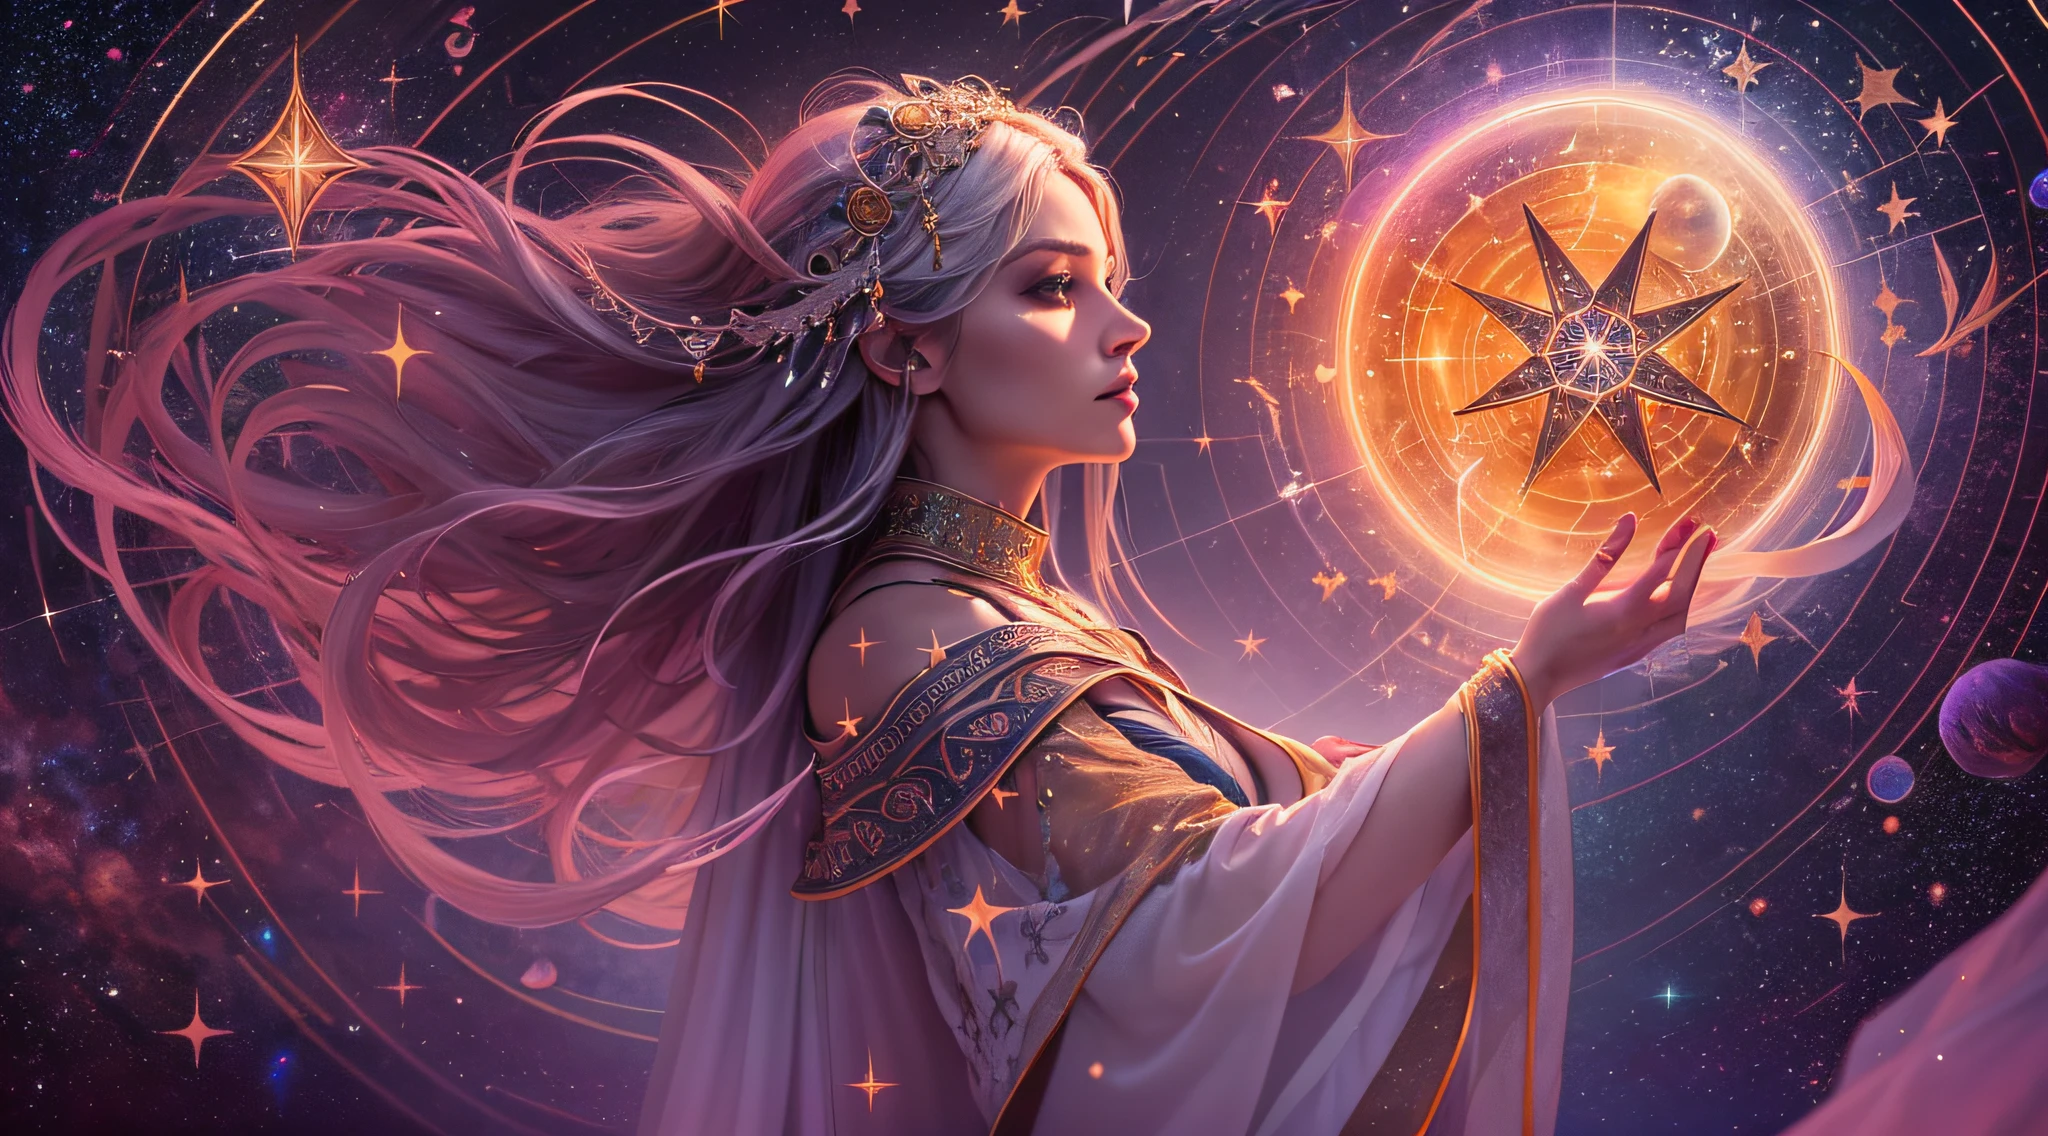 古代のルーン文字で描かれた魔法陣の中, 魔術師は優雅さと力を持って立っています. 彼女は空気のような人物です, 夜空のように輝く星のローブに包まれて. あなたの髪は銀のストランドのようなものです, そして彼らの目は遠くの星の明るさを反映しています. 彼女の手の中に, 彼女は宇宙の本質を捉えた発光結晶で飾られた杖を持っています. 彼女の後に, 星座が生き返る, 光と魔法のシンフォニーで空を踊る. 彼女は古代の秘密の番人です, 天界と地上界の関係, 星の力を人間の理解の限界を超える呪文に導くことができる.